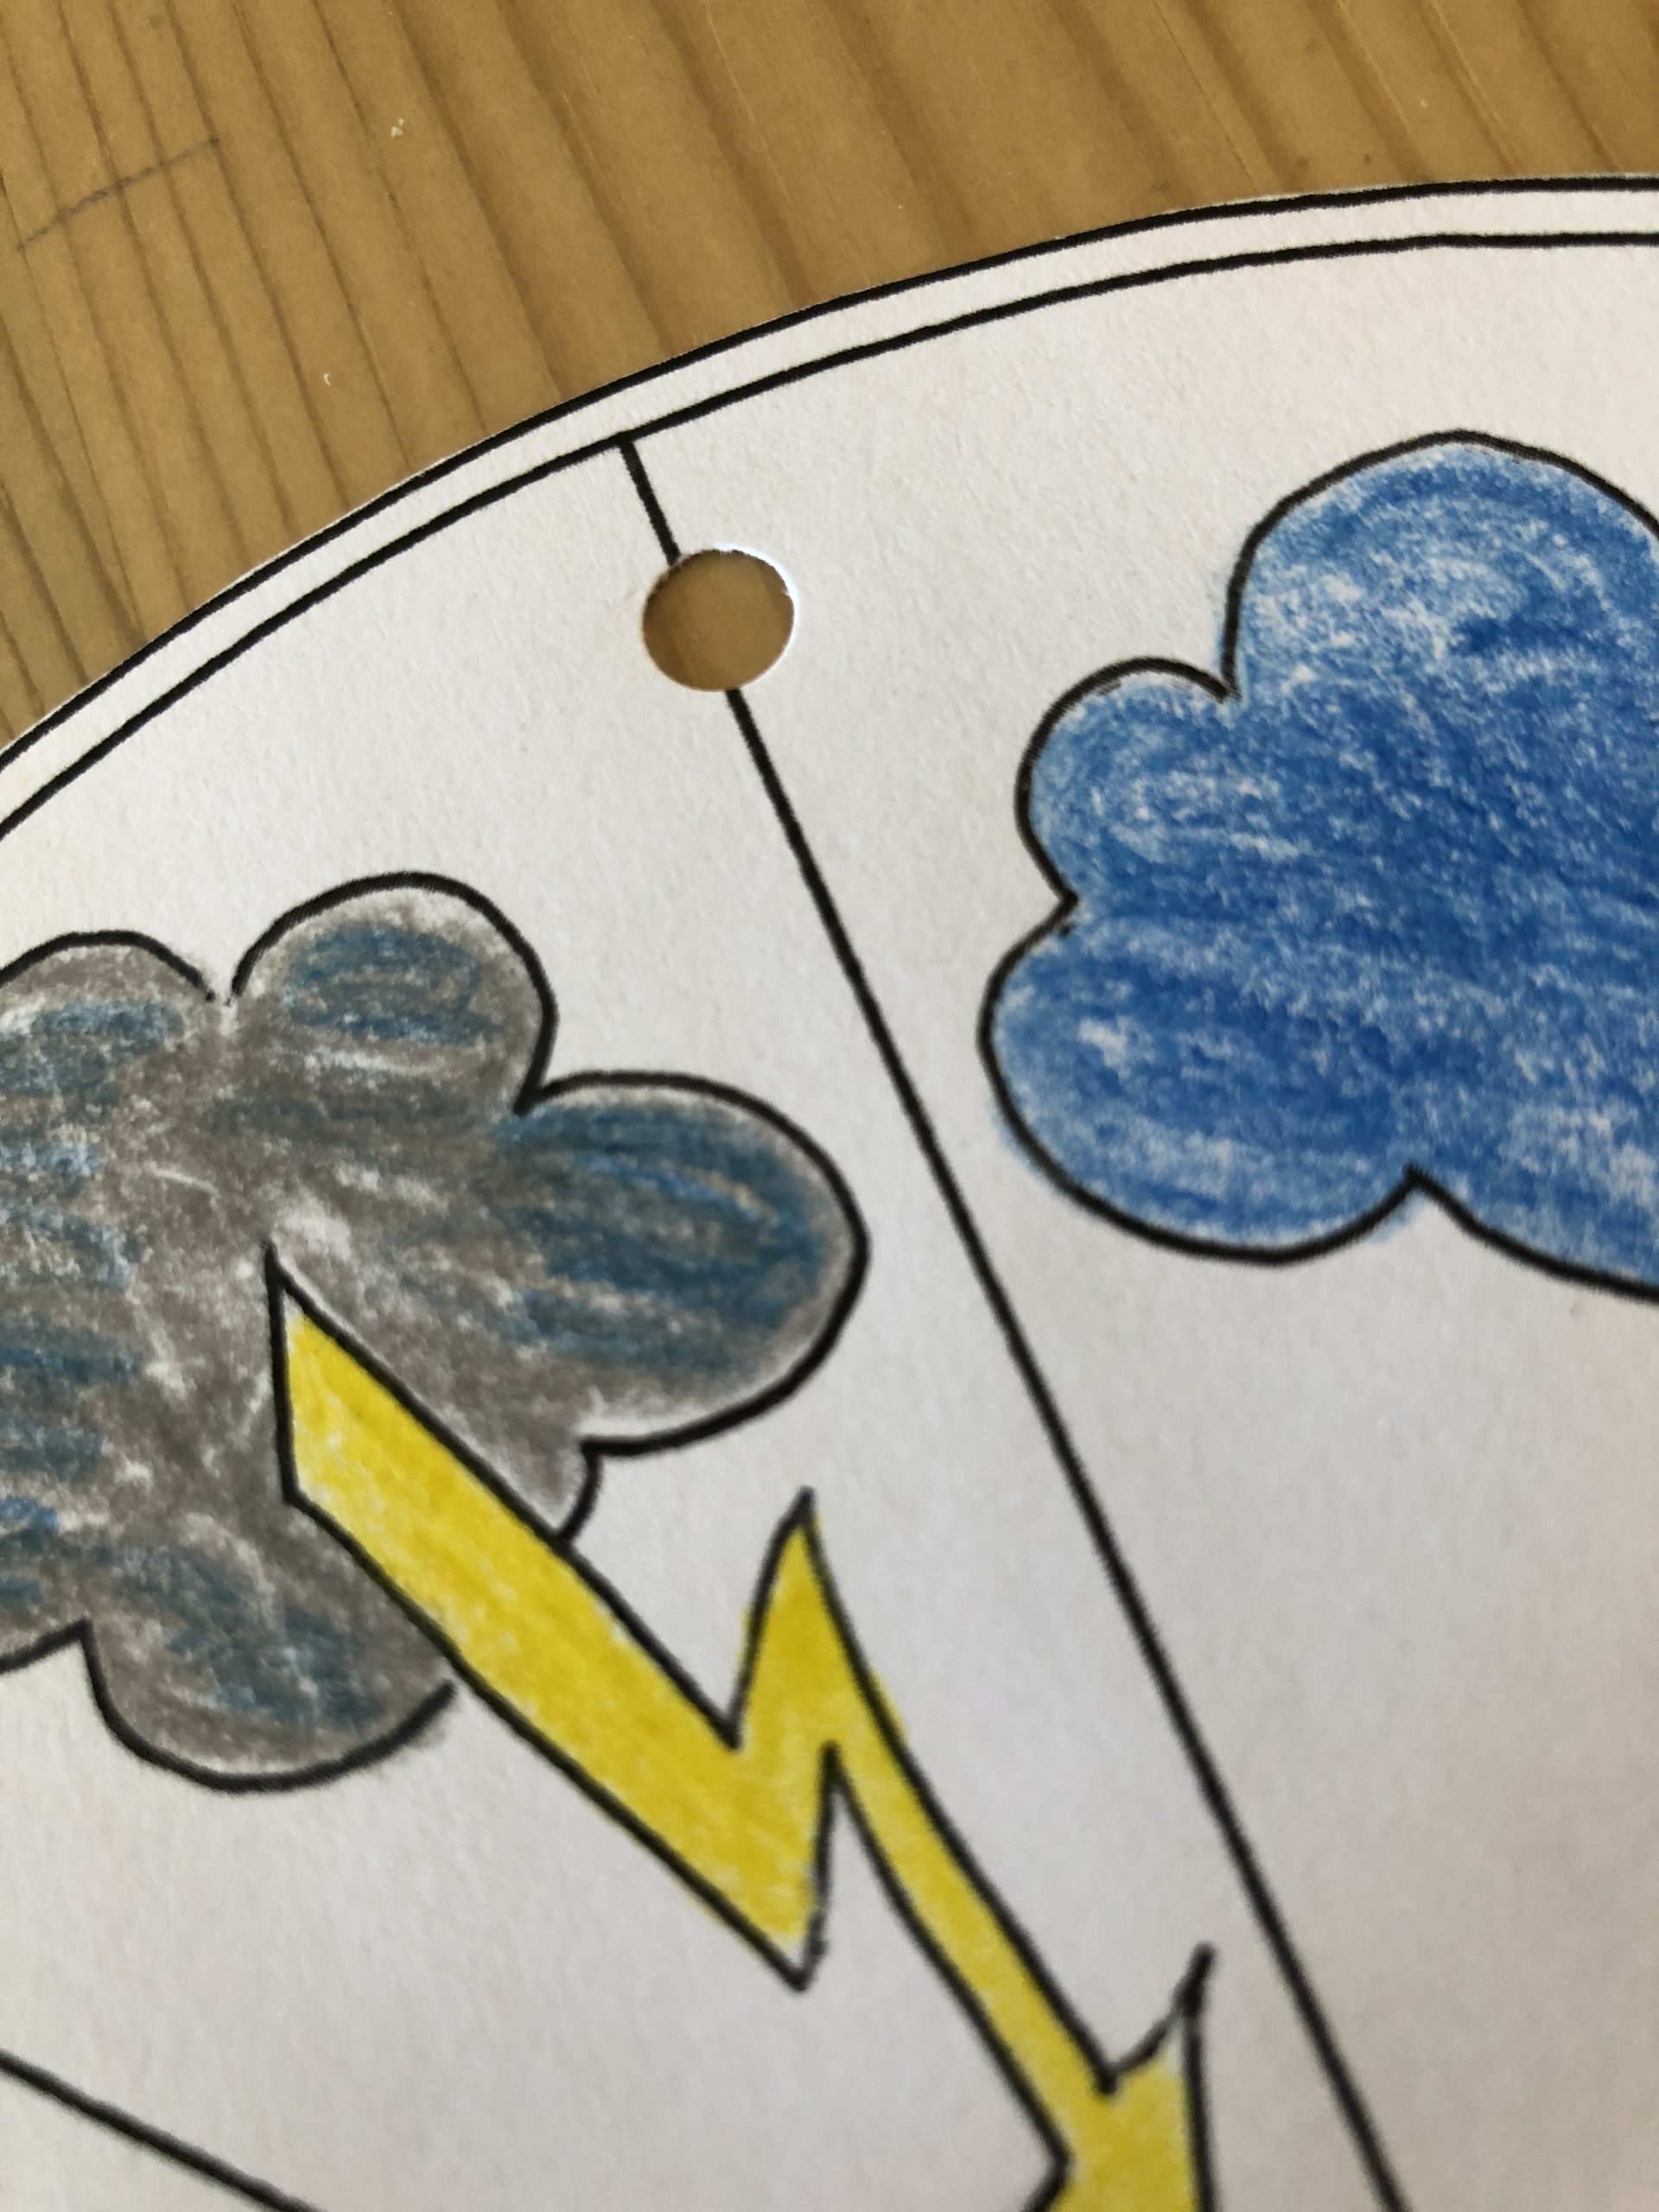 Bild zum Schritt 8 für das Bastel- und DIY-Abenteuer für Kinder: 'Macht zwischen der Gewitterwolke und der Wolke ein Loch in...'